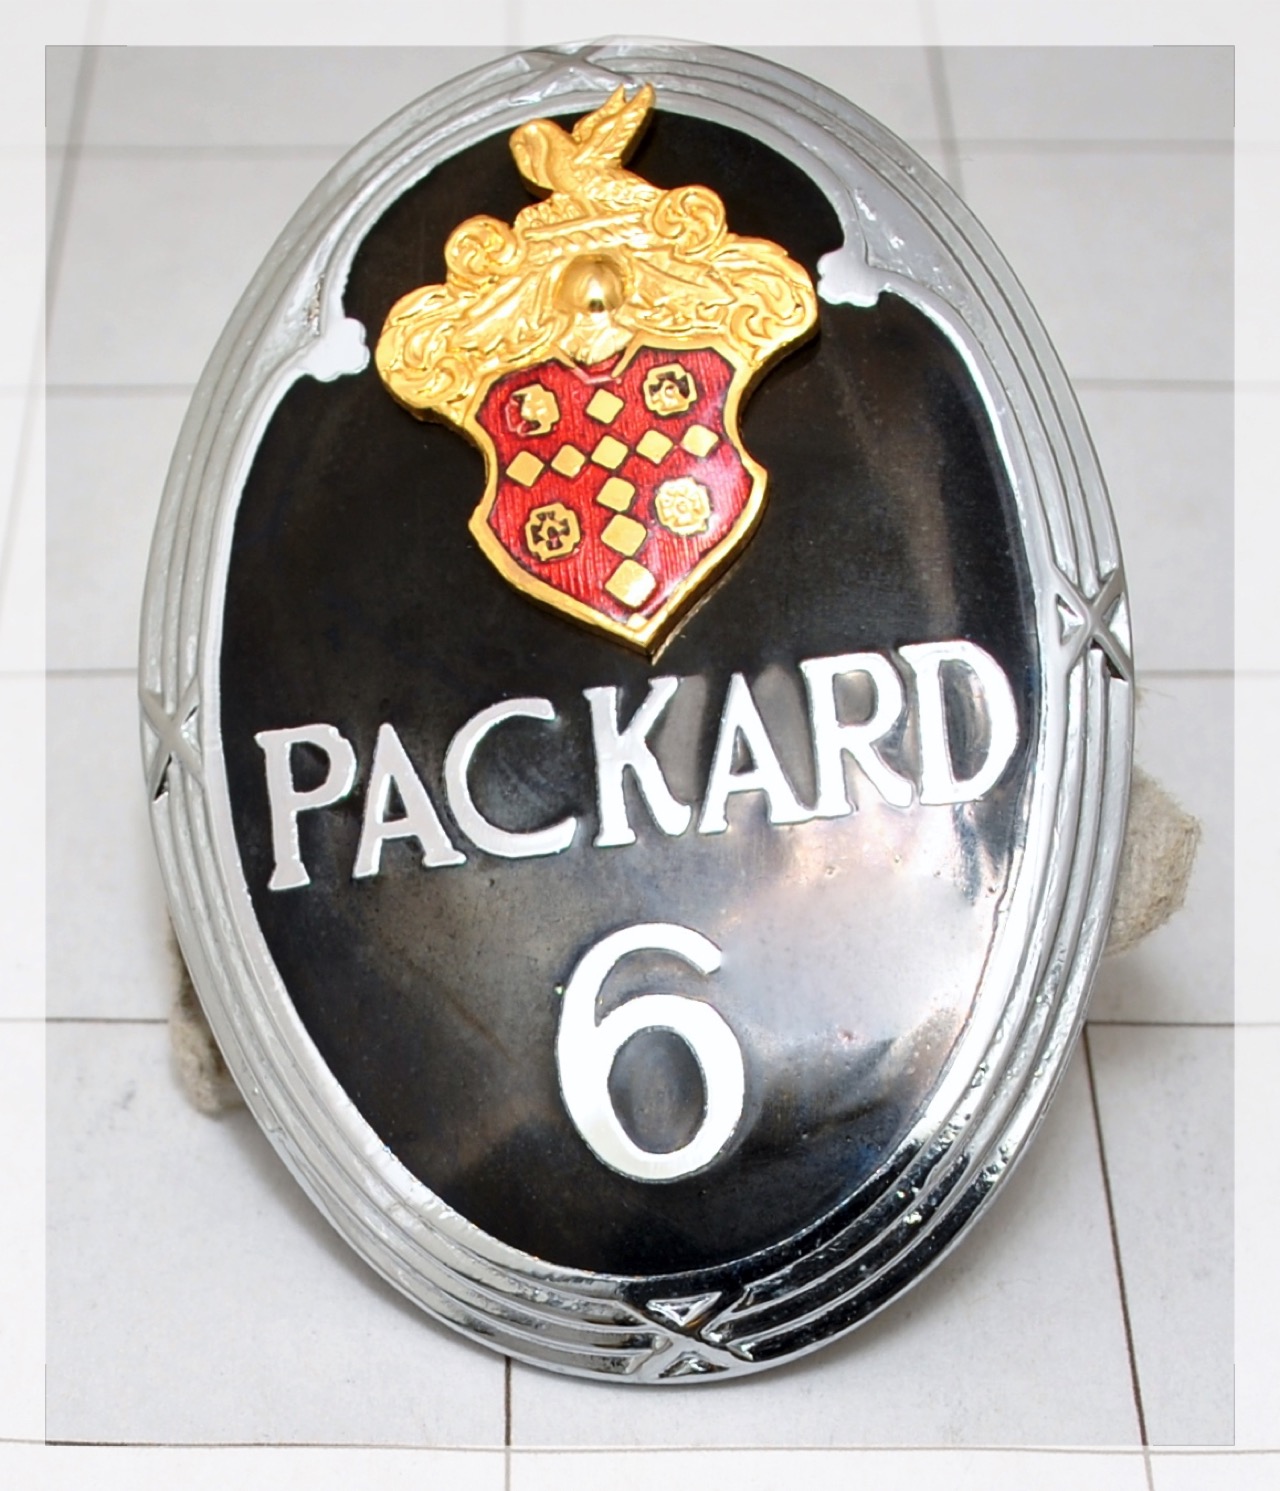 Packard 6